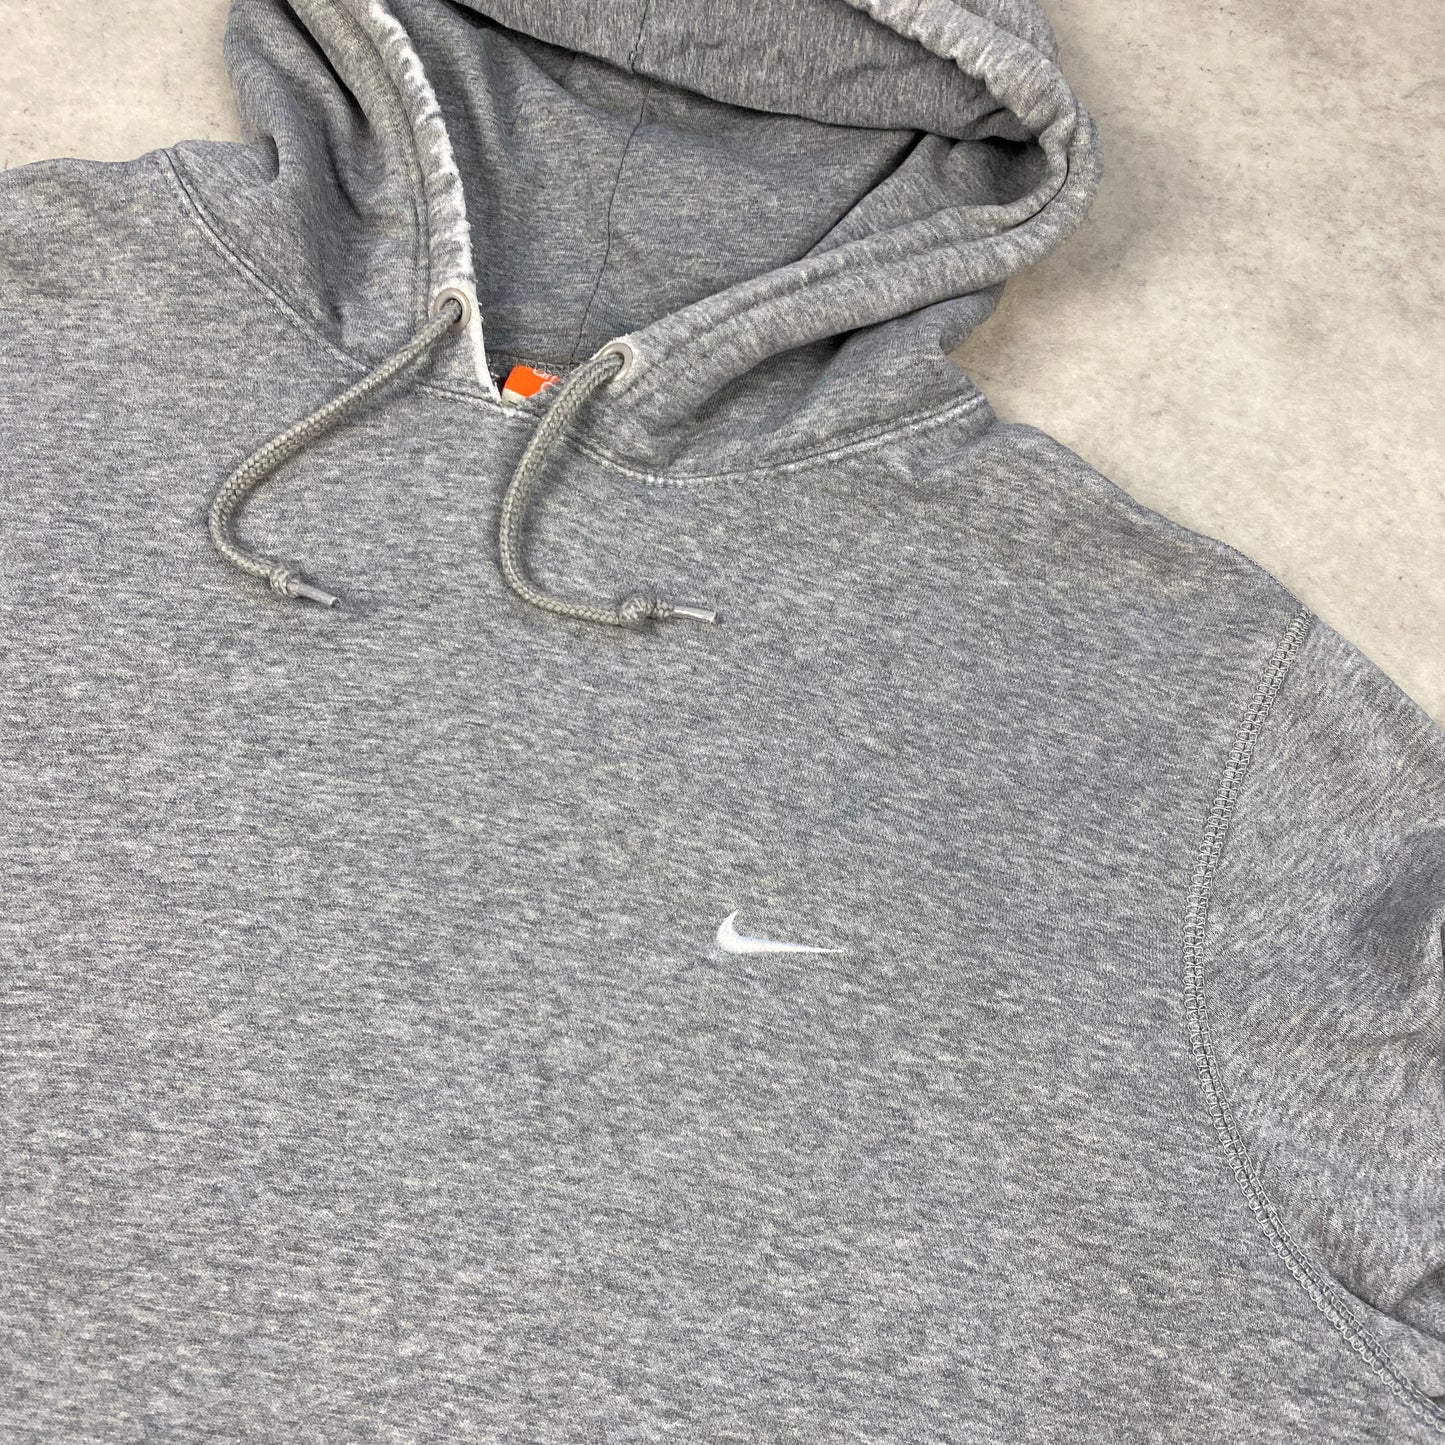 Nike distressed hoodie (L)